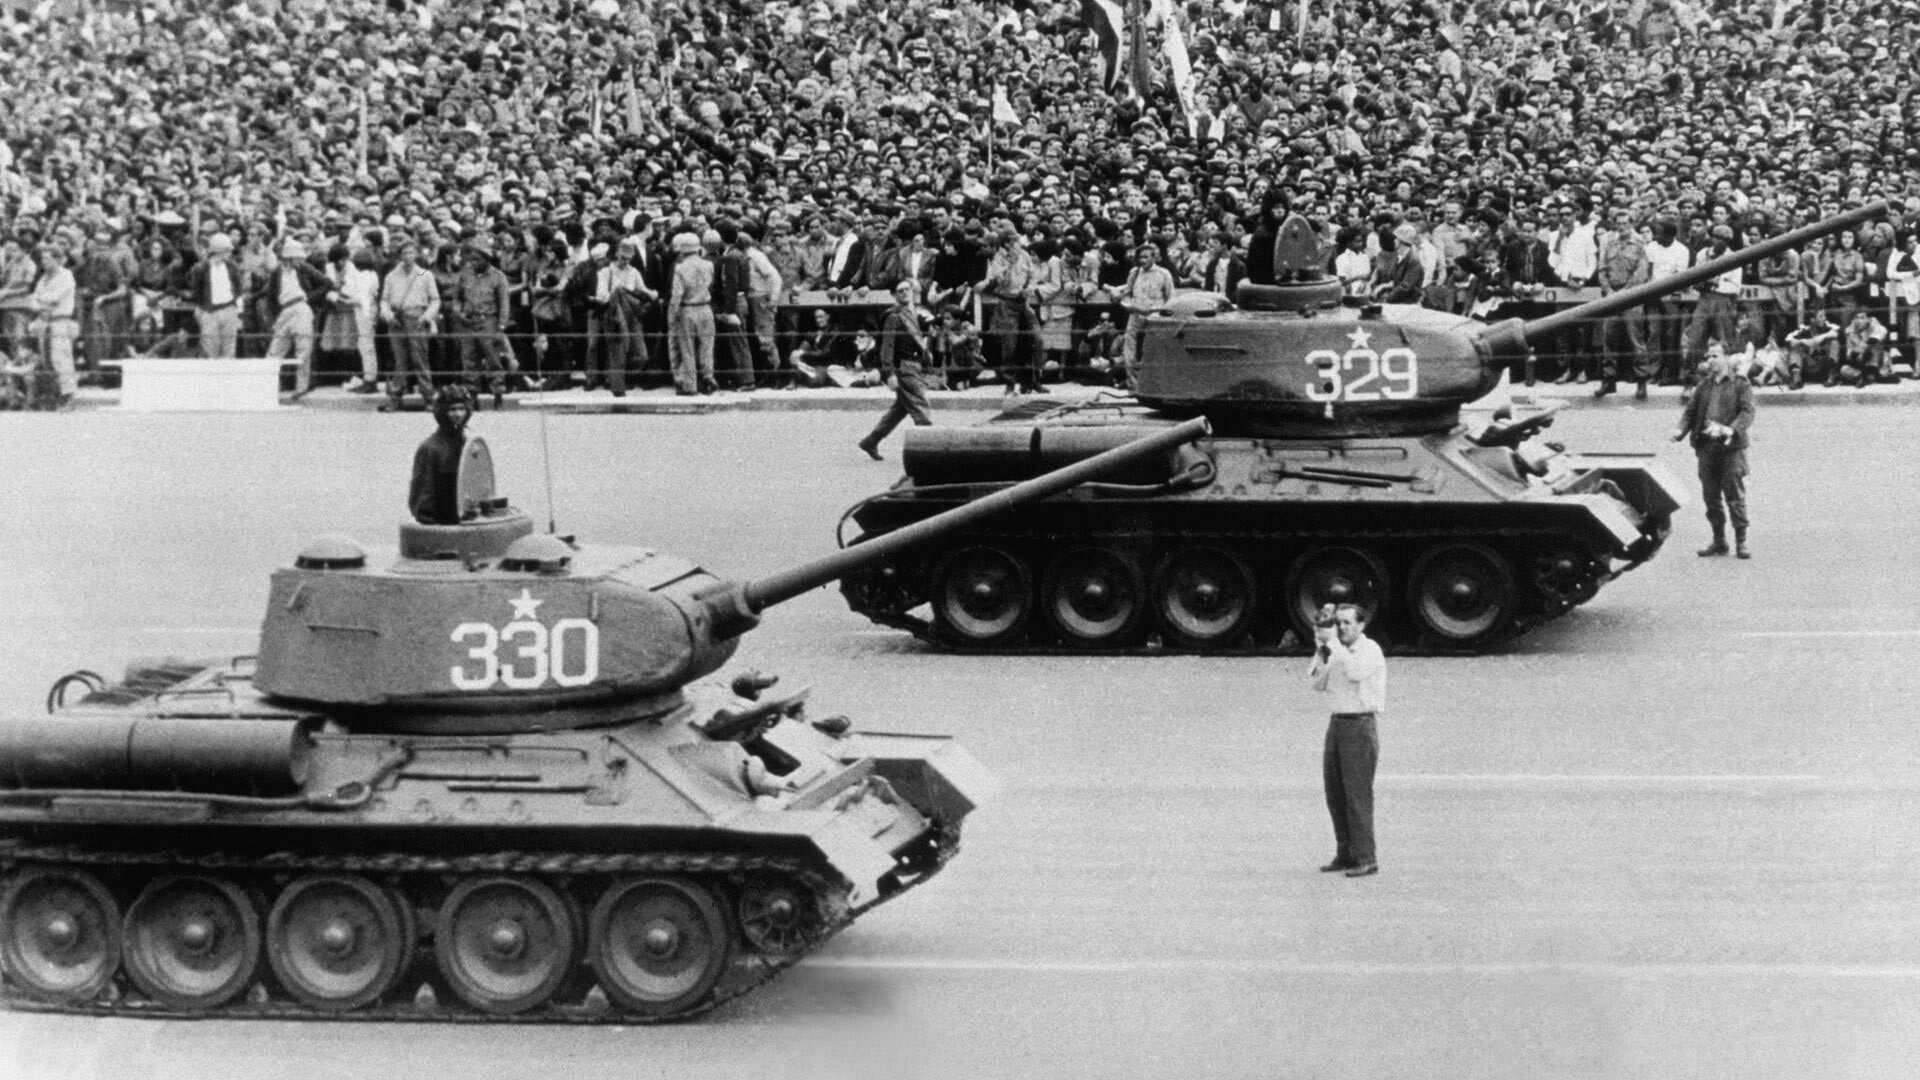 Tanques construidos en Rusia ruedan por la Plaza José Martí en presencia de miles de civiles con banderas en el tercer aniversario de la revolución cubana.